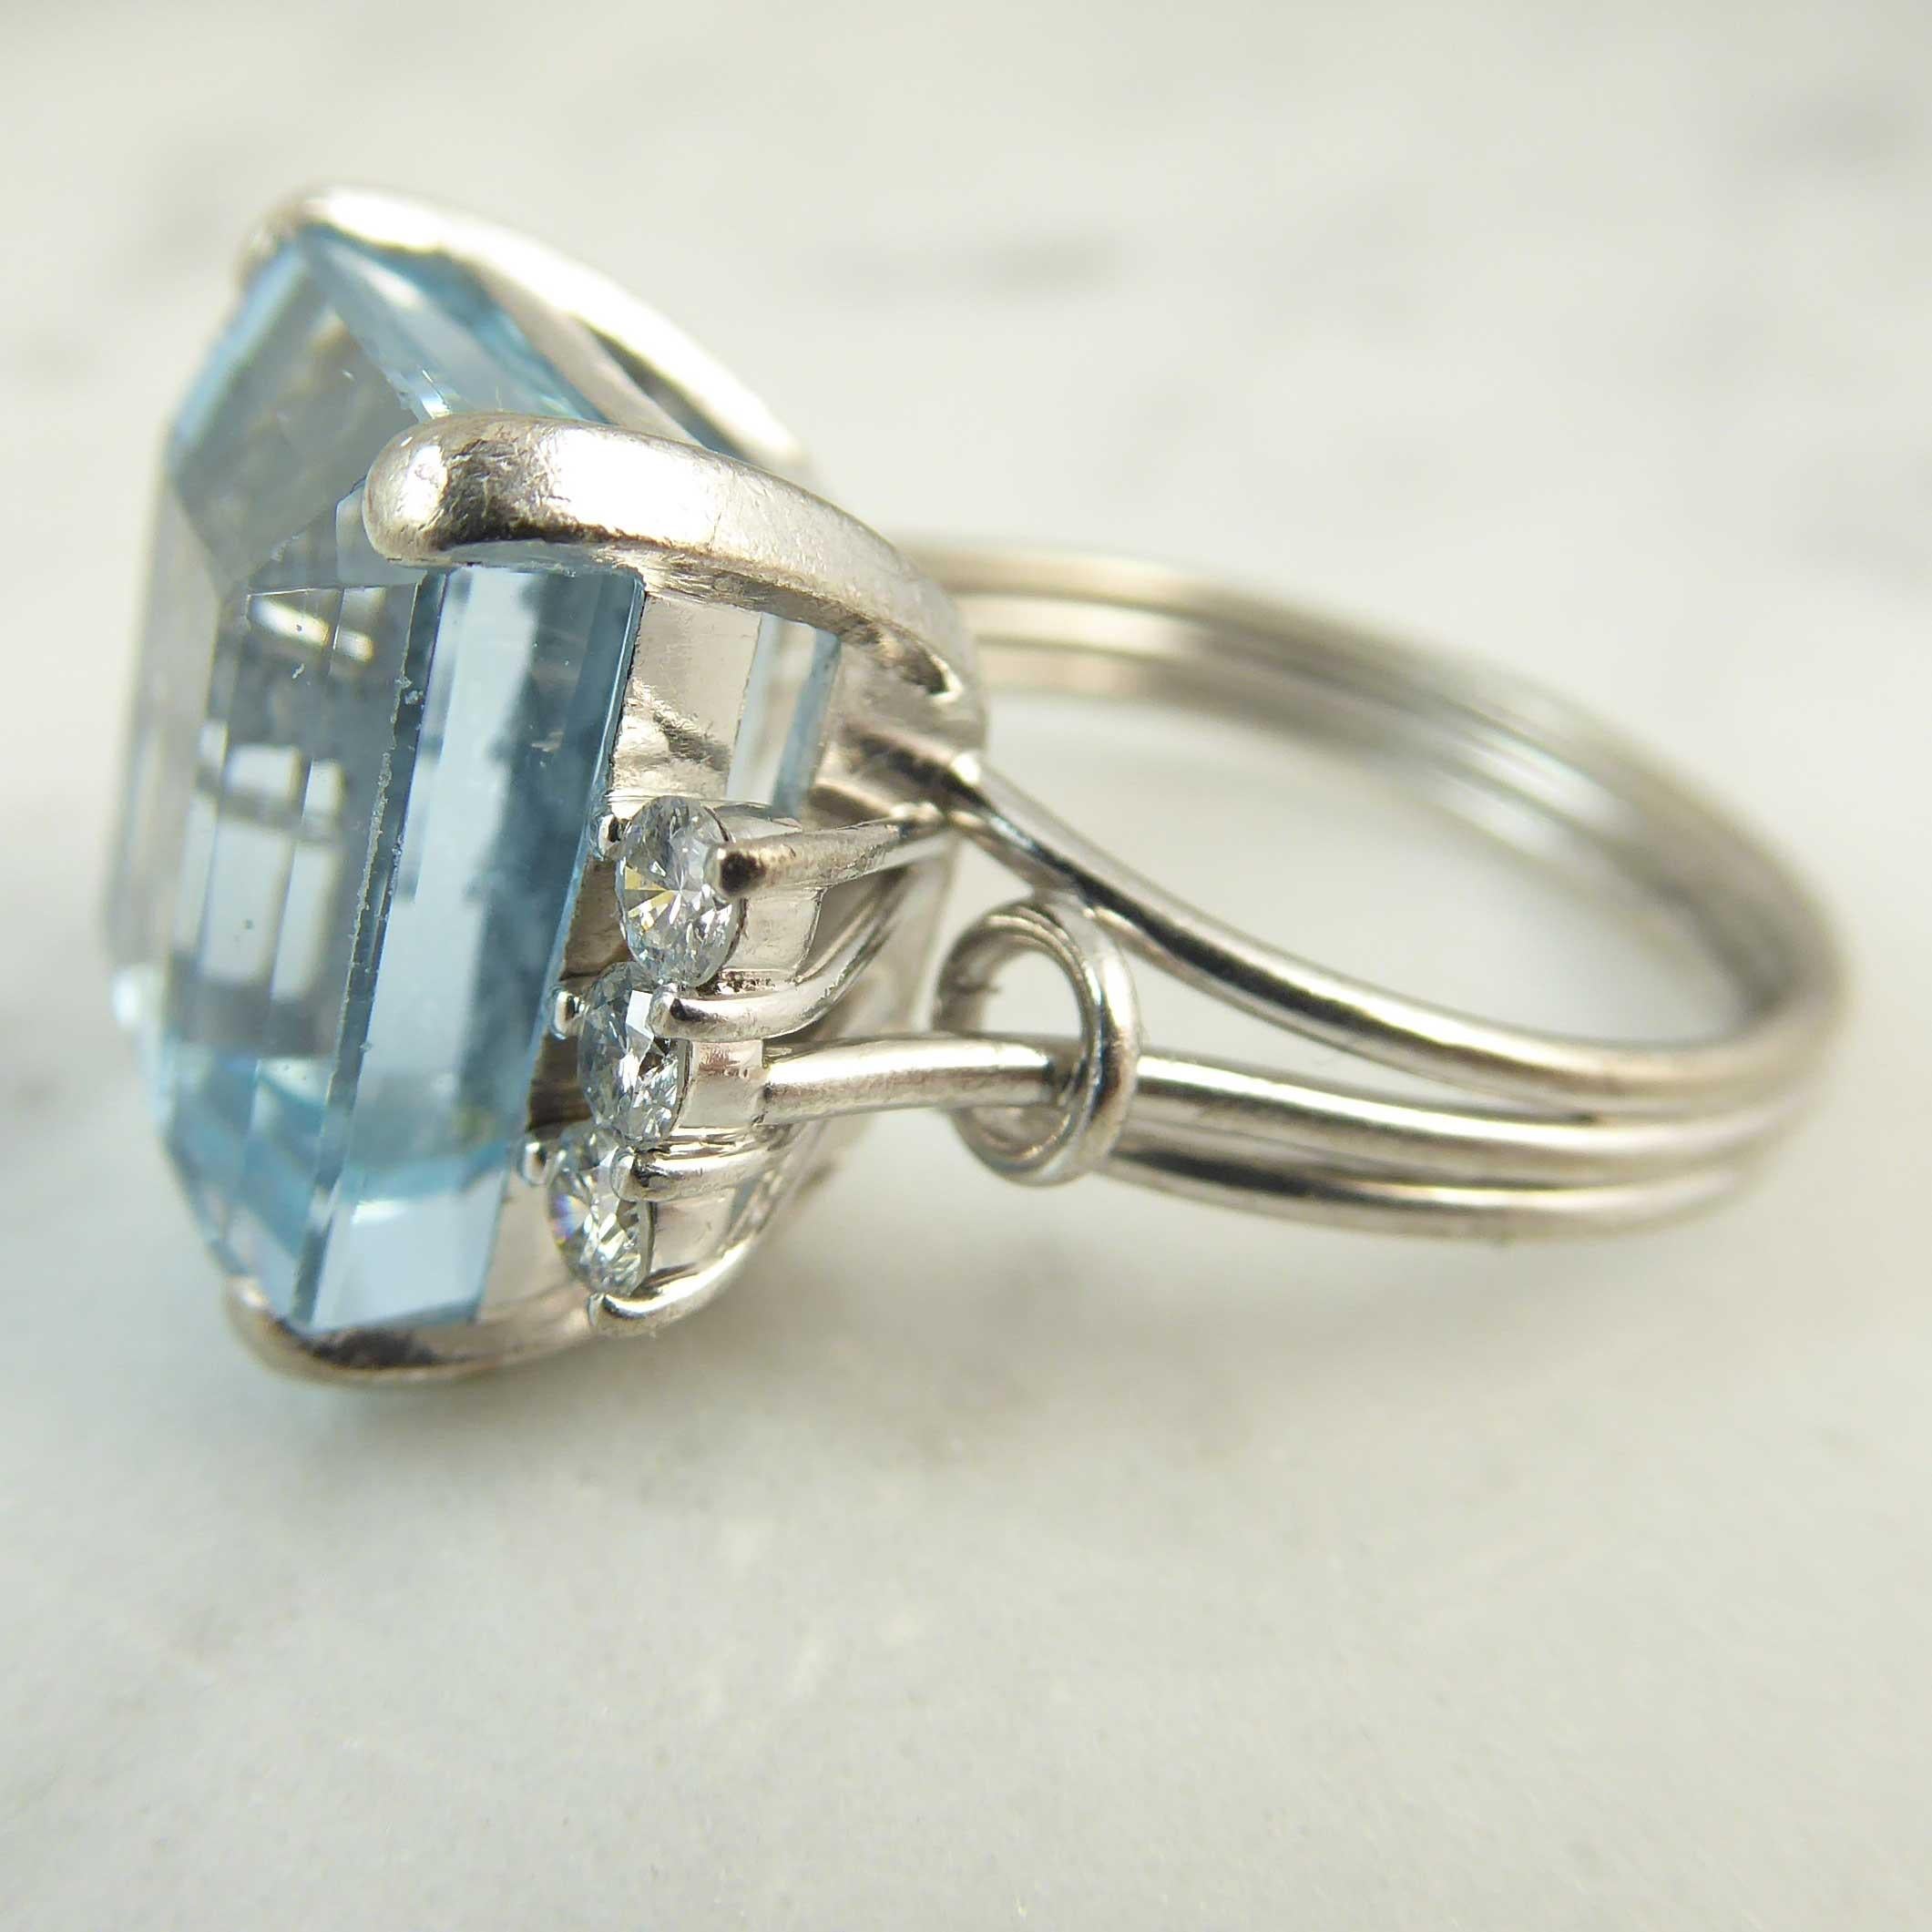 Art Deco Contemporary Emerald Cut Aquamarine Diamond Ring, 8.43 Carat, White Gold